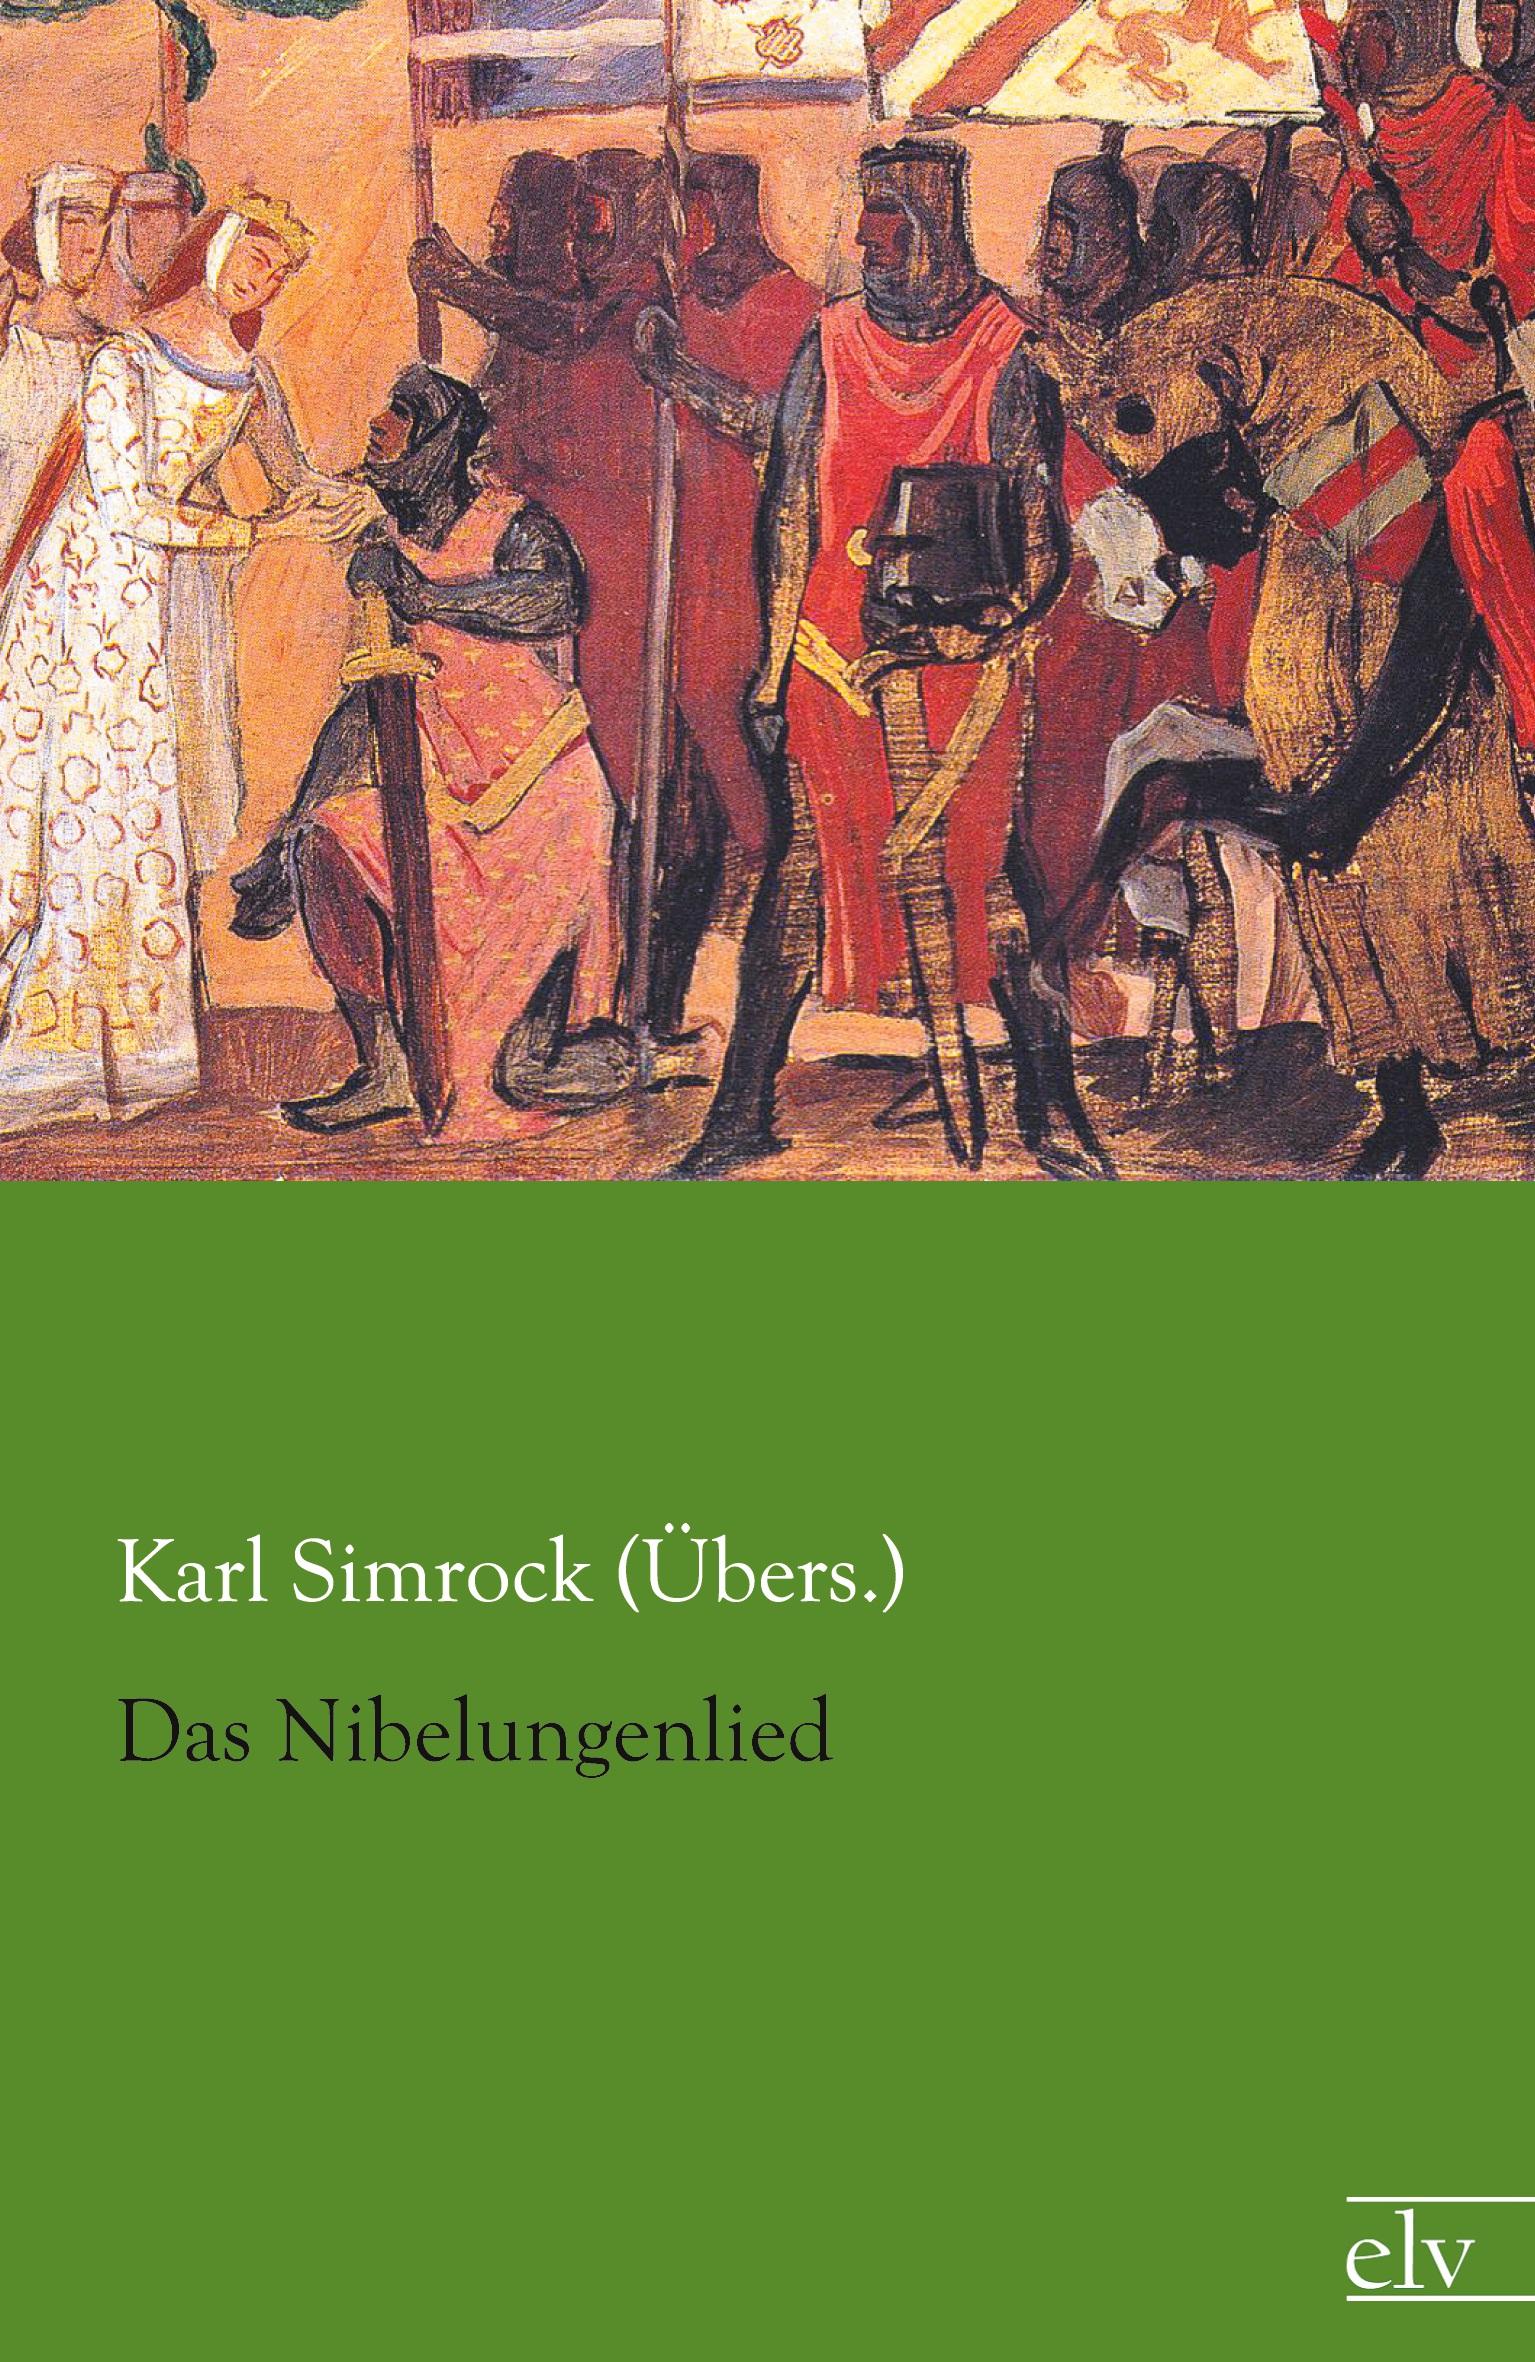 Das Nibelungenlied | Karl Simrock (Übers. | Taschenbuch | Paperback | 308 S. | Deutsch | 2015 | Europäischer Literaturverlag | EAN 9783959090056 - Simrock (Übers., Karl